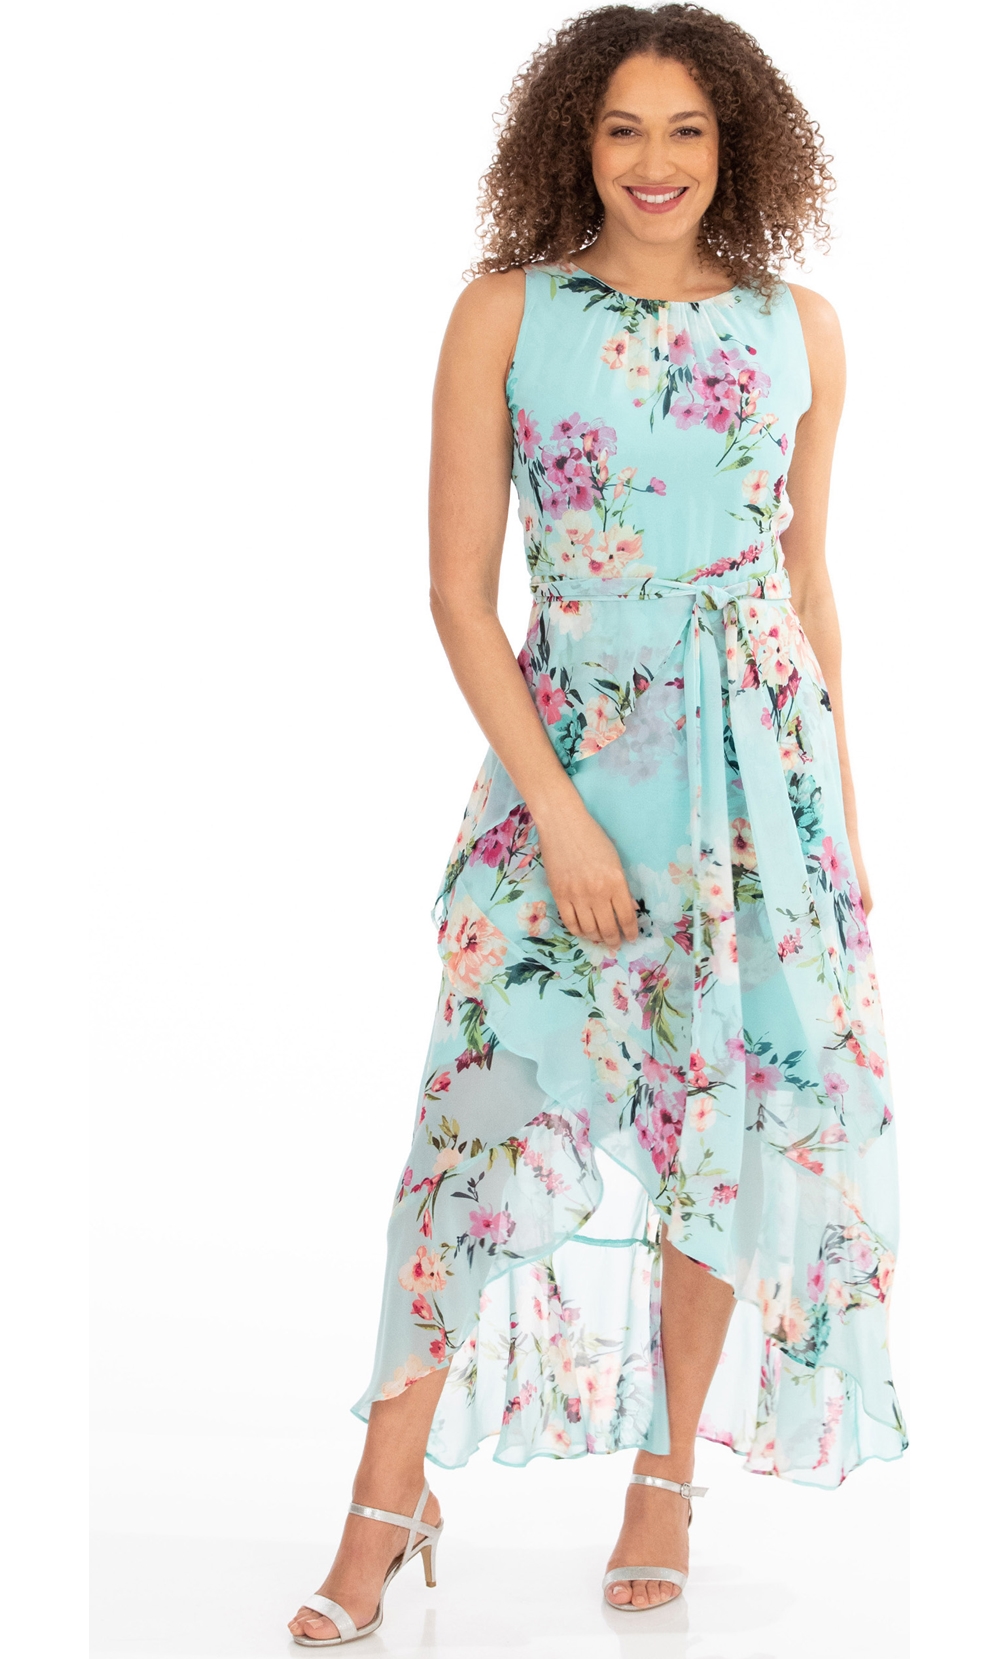 Floral Chiffon Sleeveless Dress